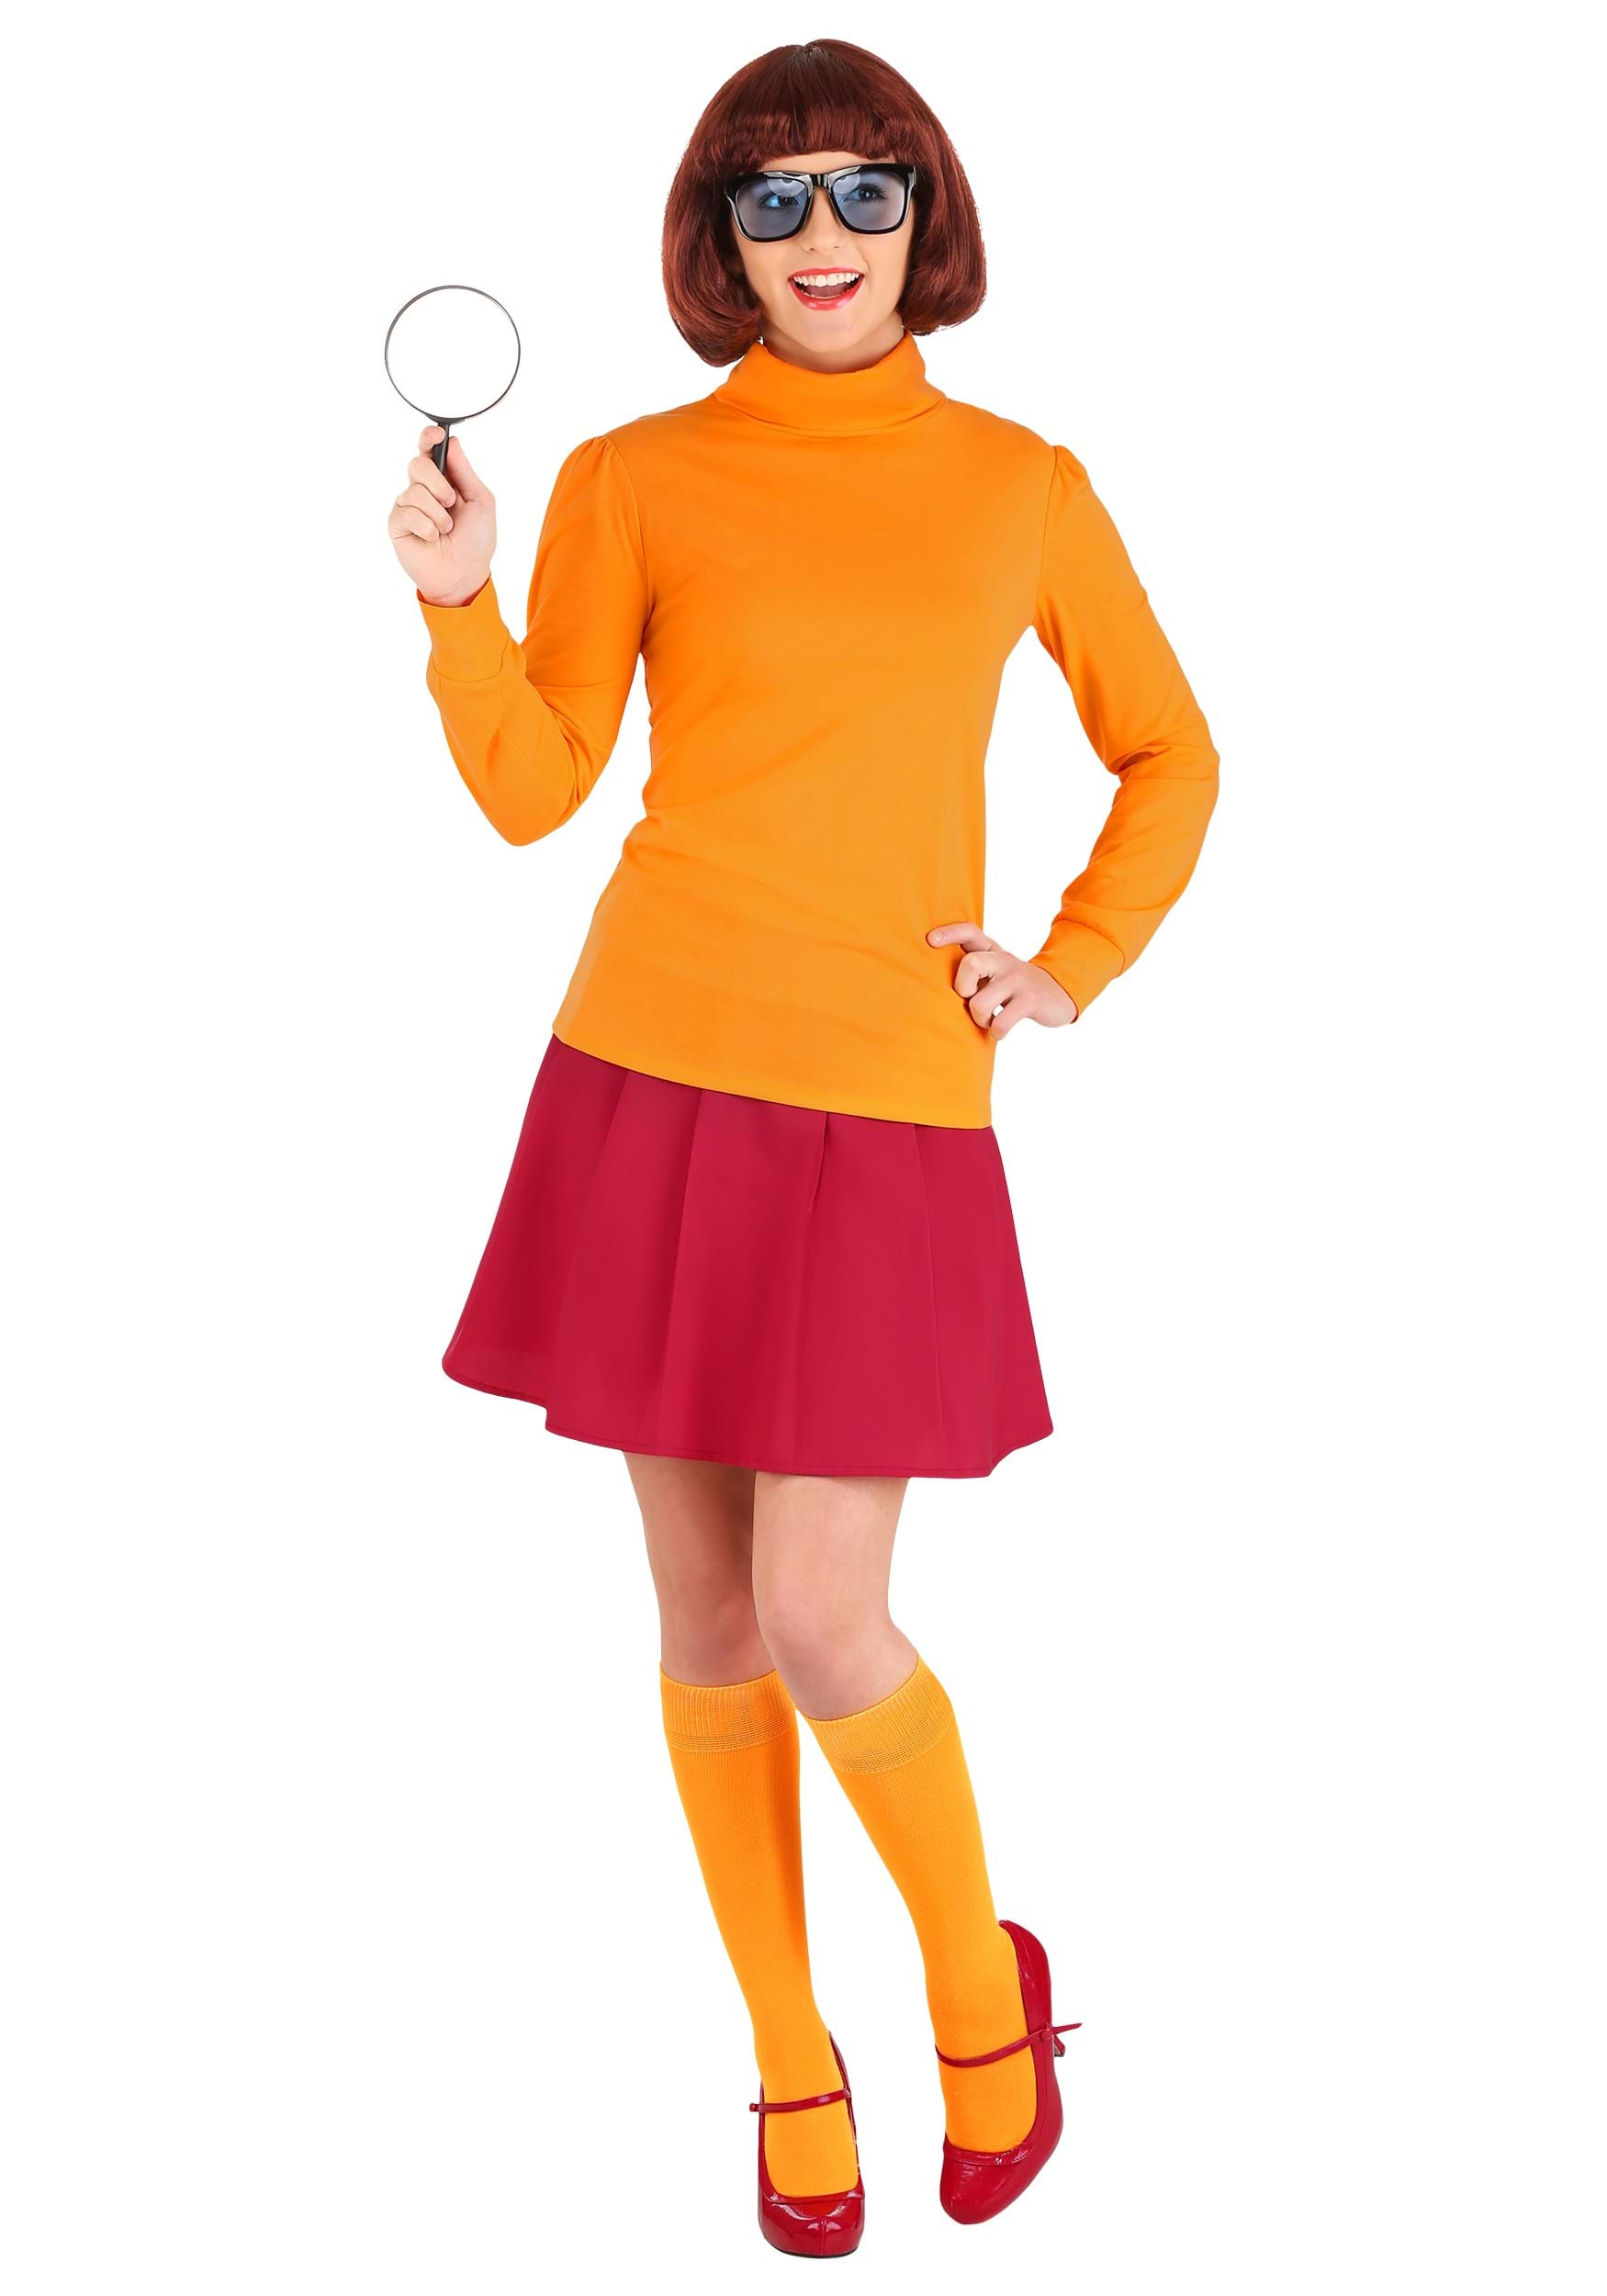 Velma Dinkley Costume 